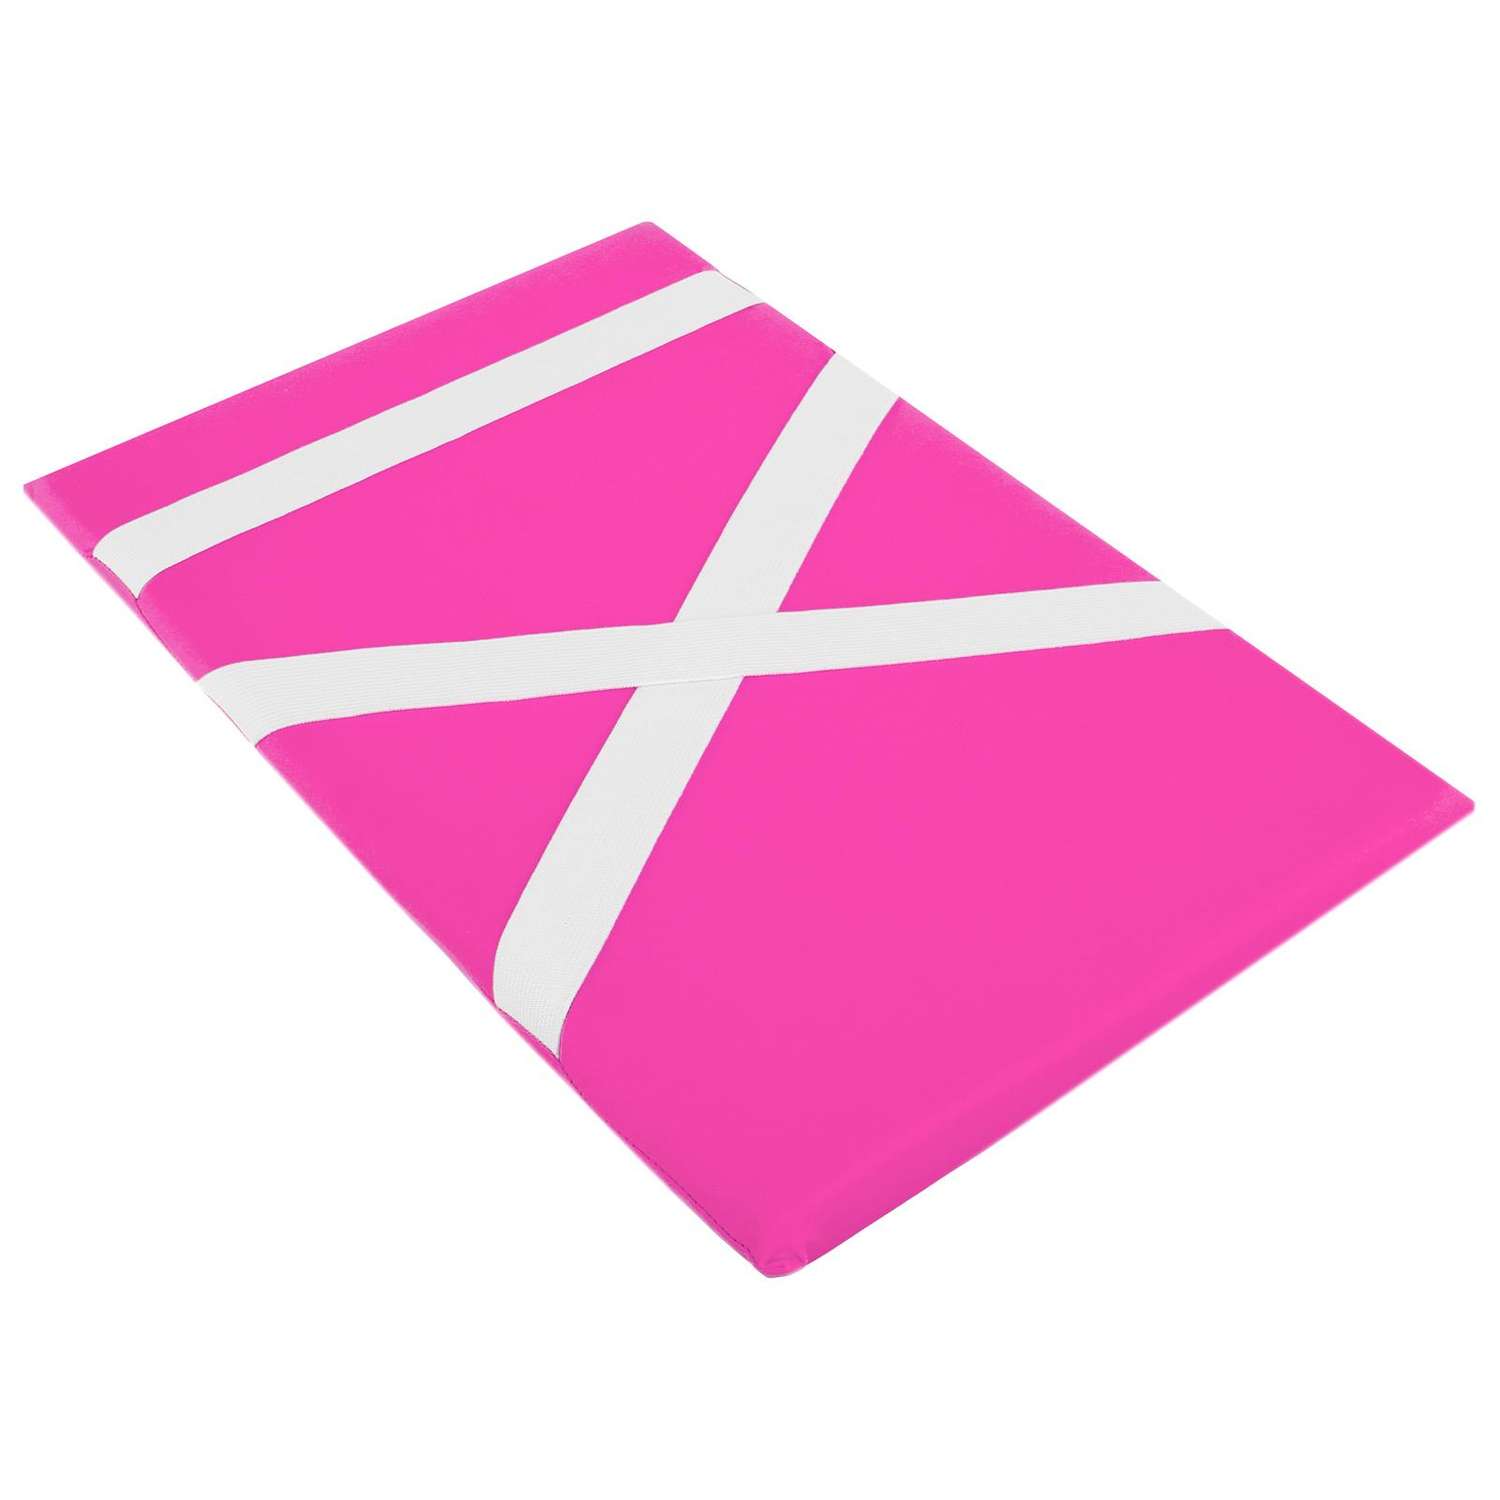 Подушка для растяжки Grace Dance гимнастическая лайкра розовый - фото 1